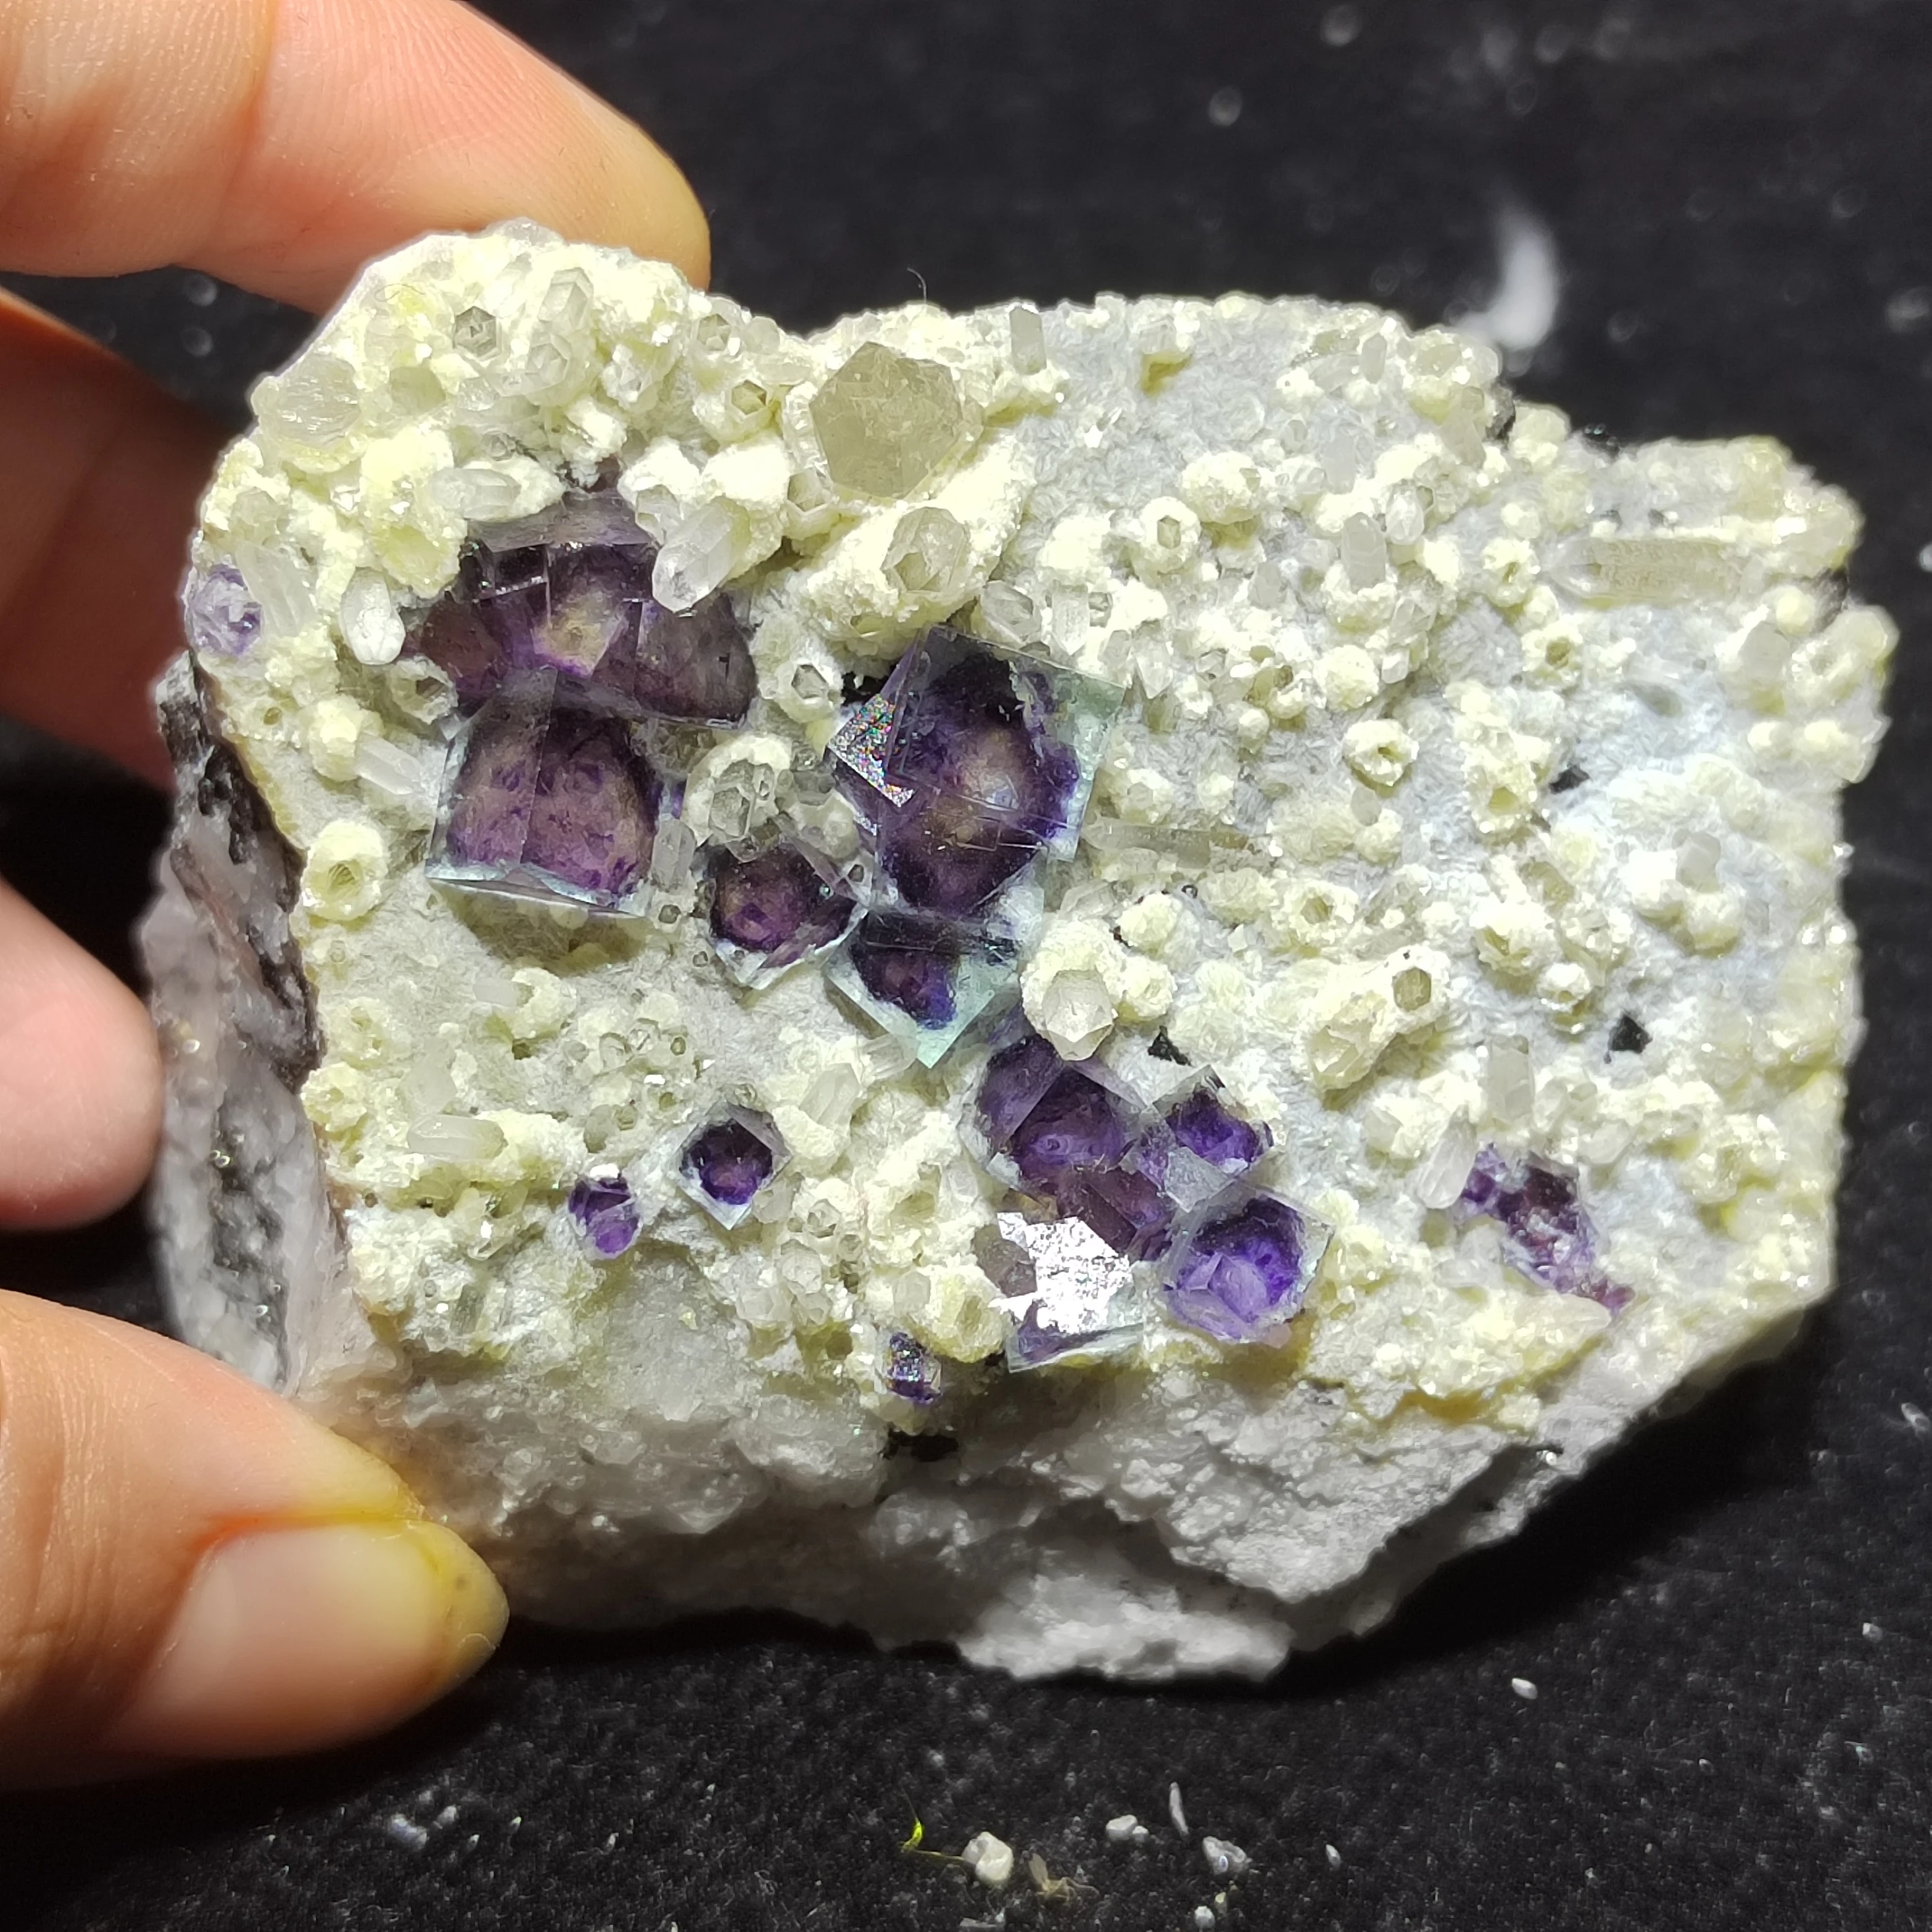 177.7 gNatural lilla fluoriidimaardlat, vilgust jms materjalist tooted, crystal kodu kaunistamiseks tervendav ringi veeni protolith kristall pärl maavarade näidiseid